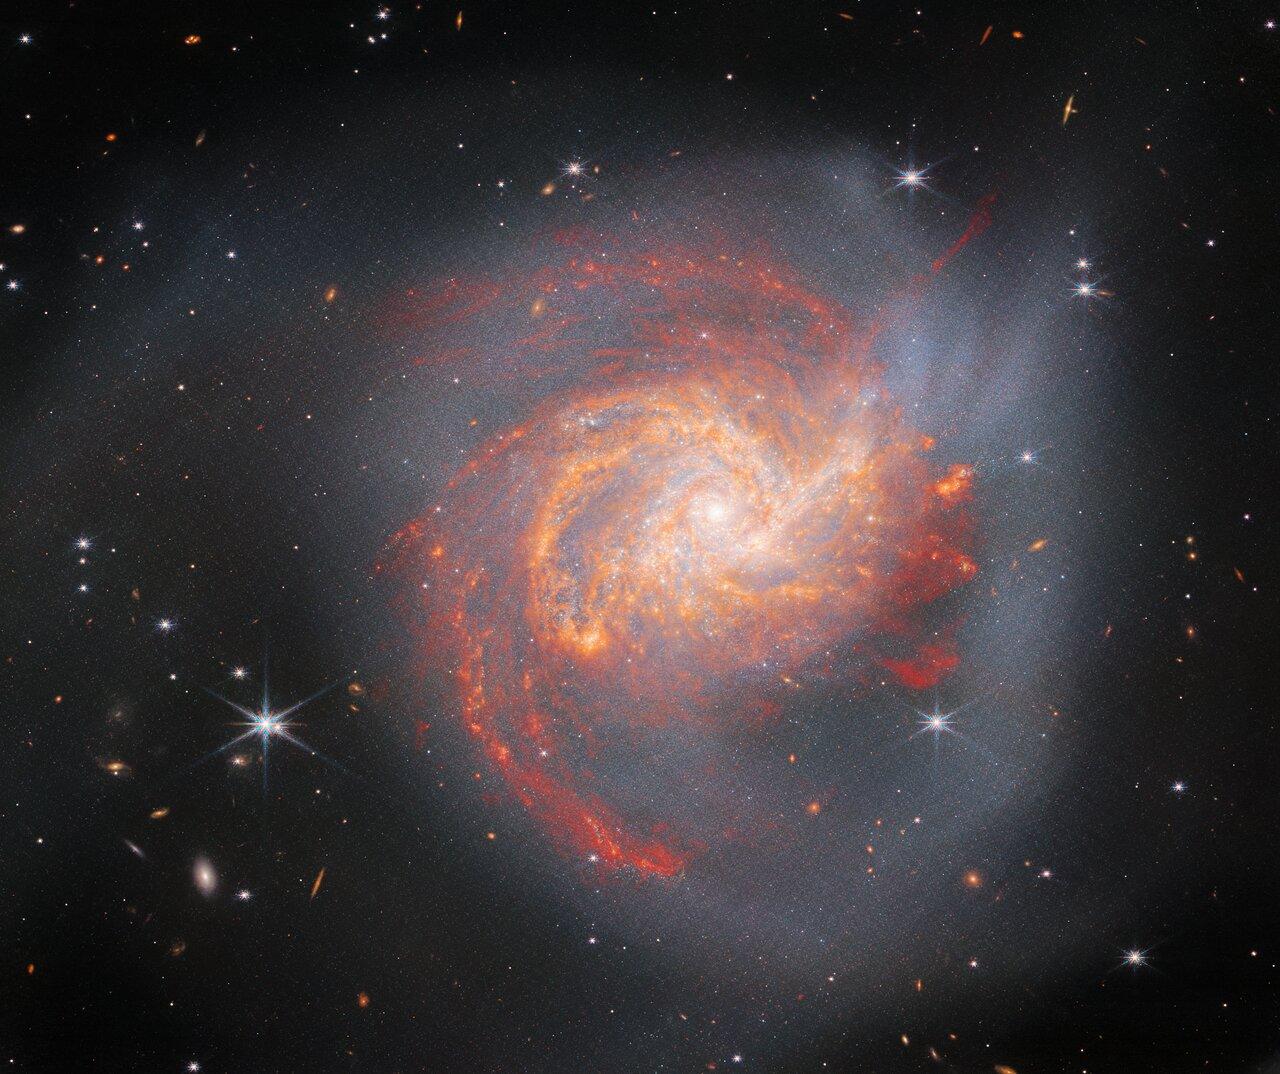 James Webb показав яскраву галактику у сузір’ї Вітрила